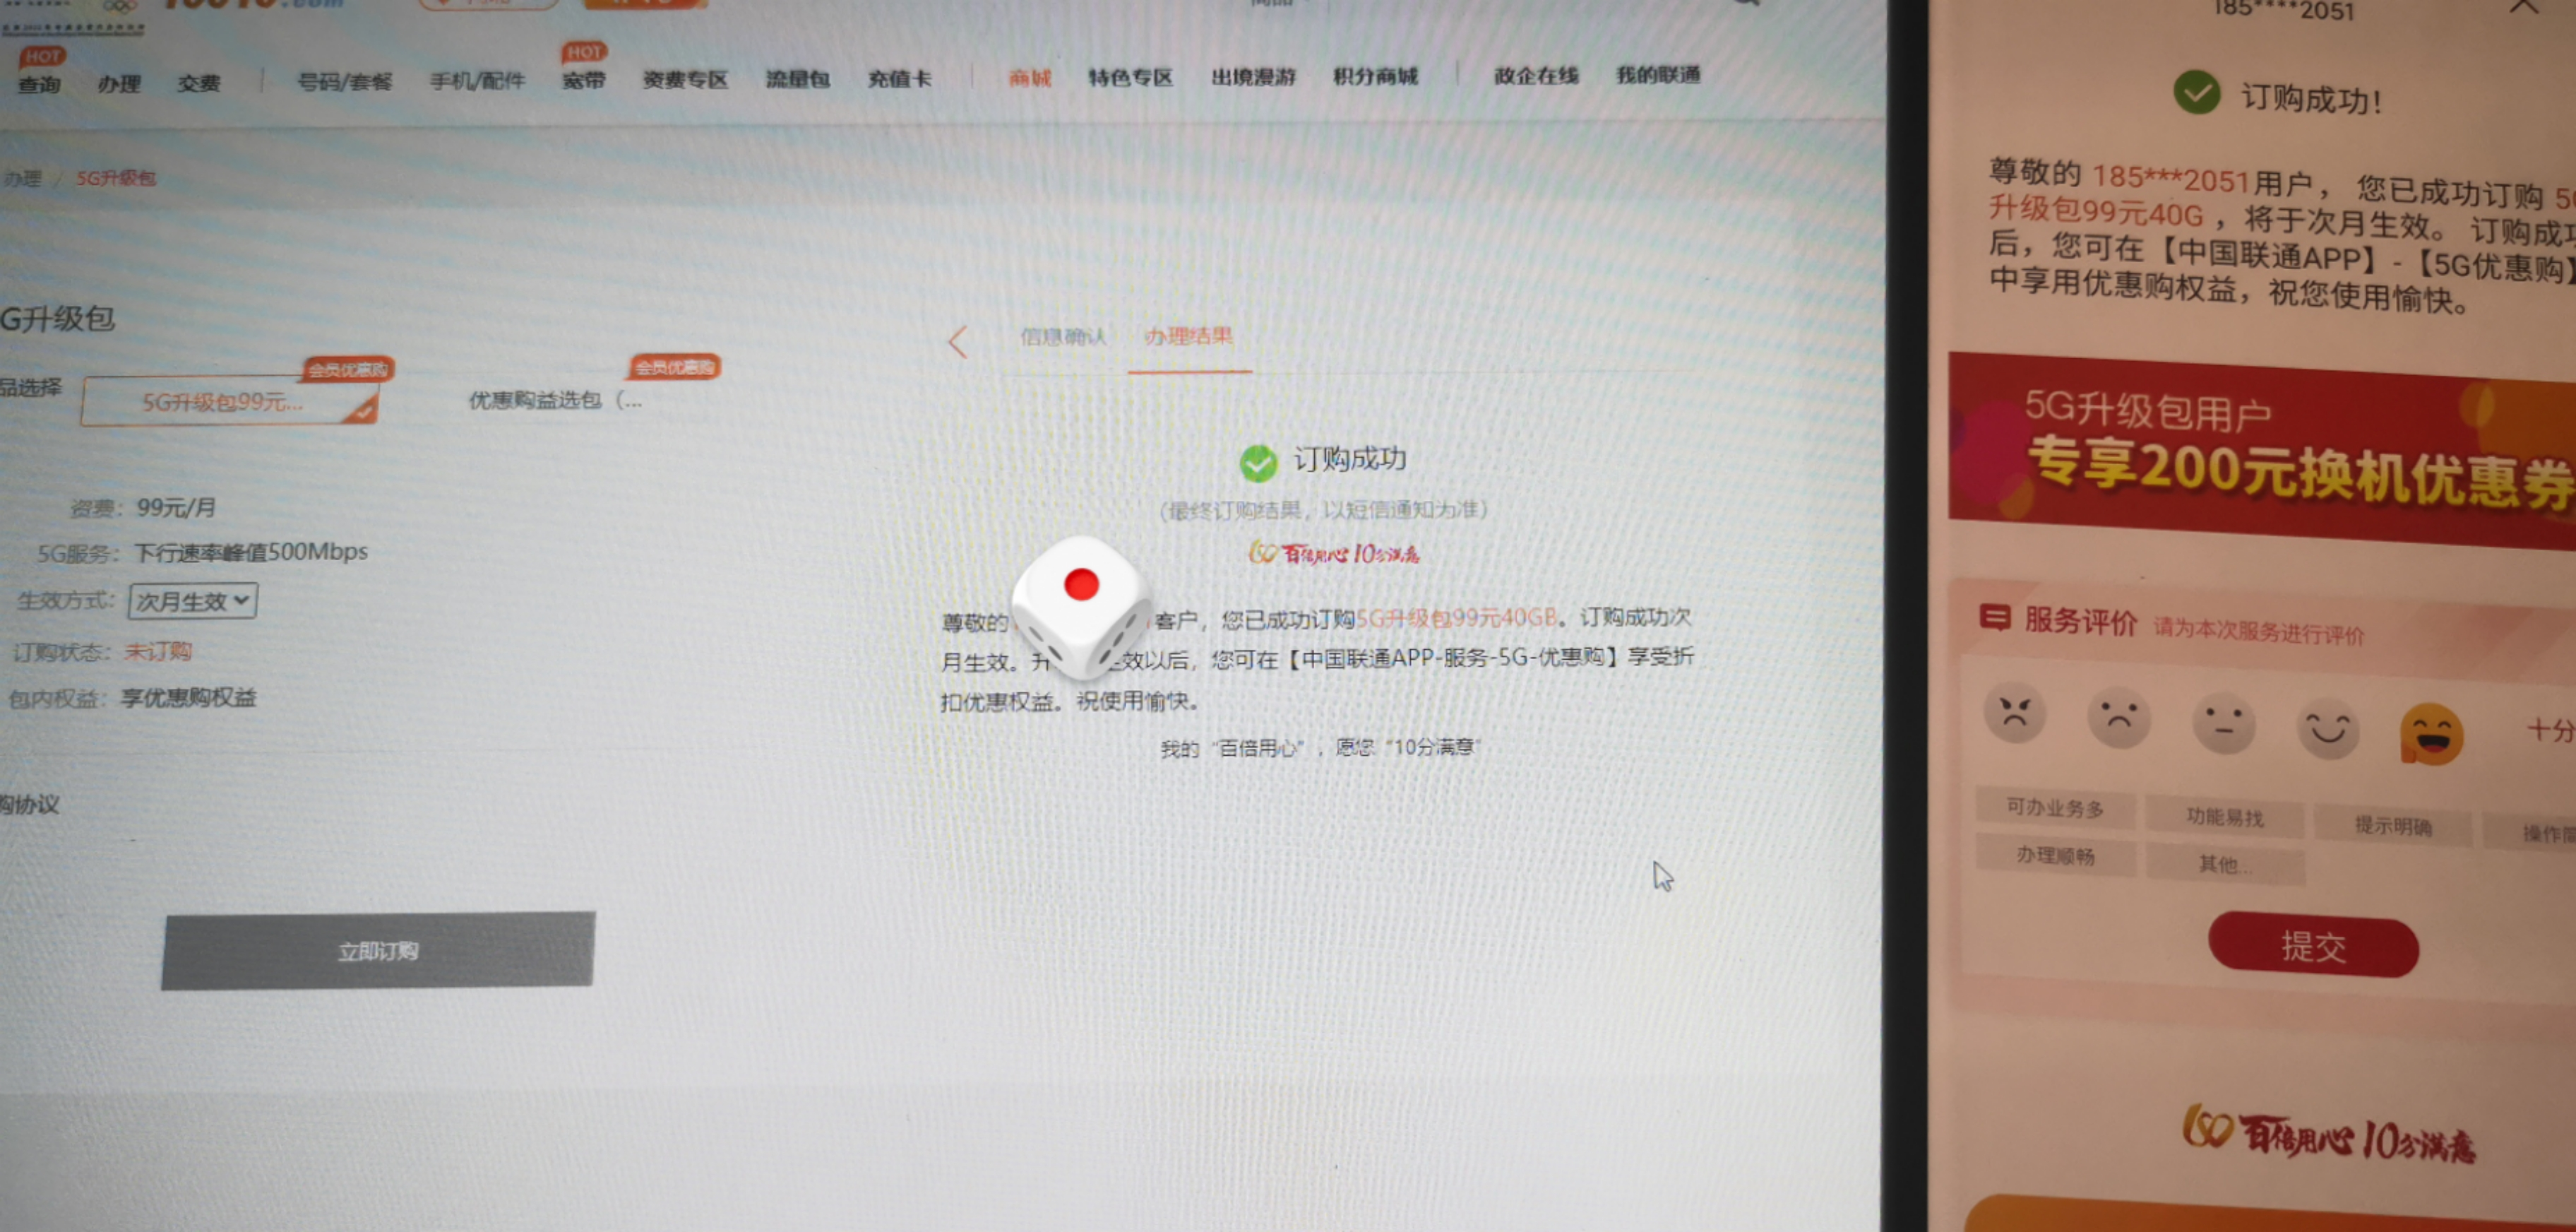 中国联通卡：利用系统漏洞免费获得500Mbps 5G VIP 速率